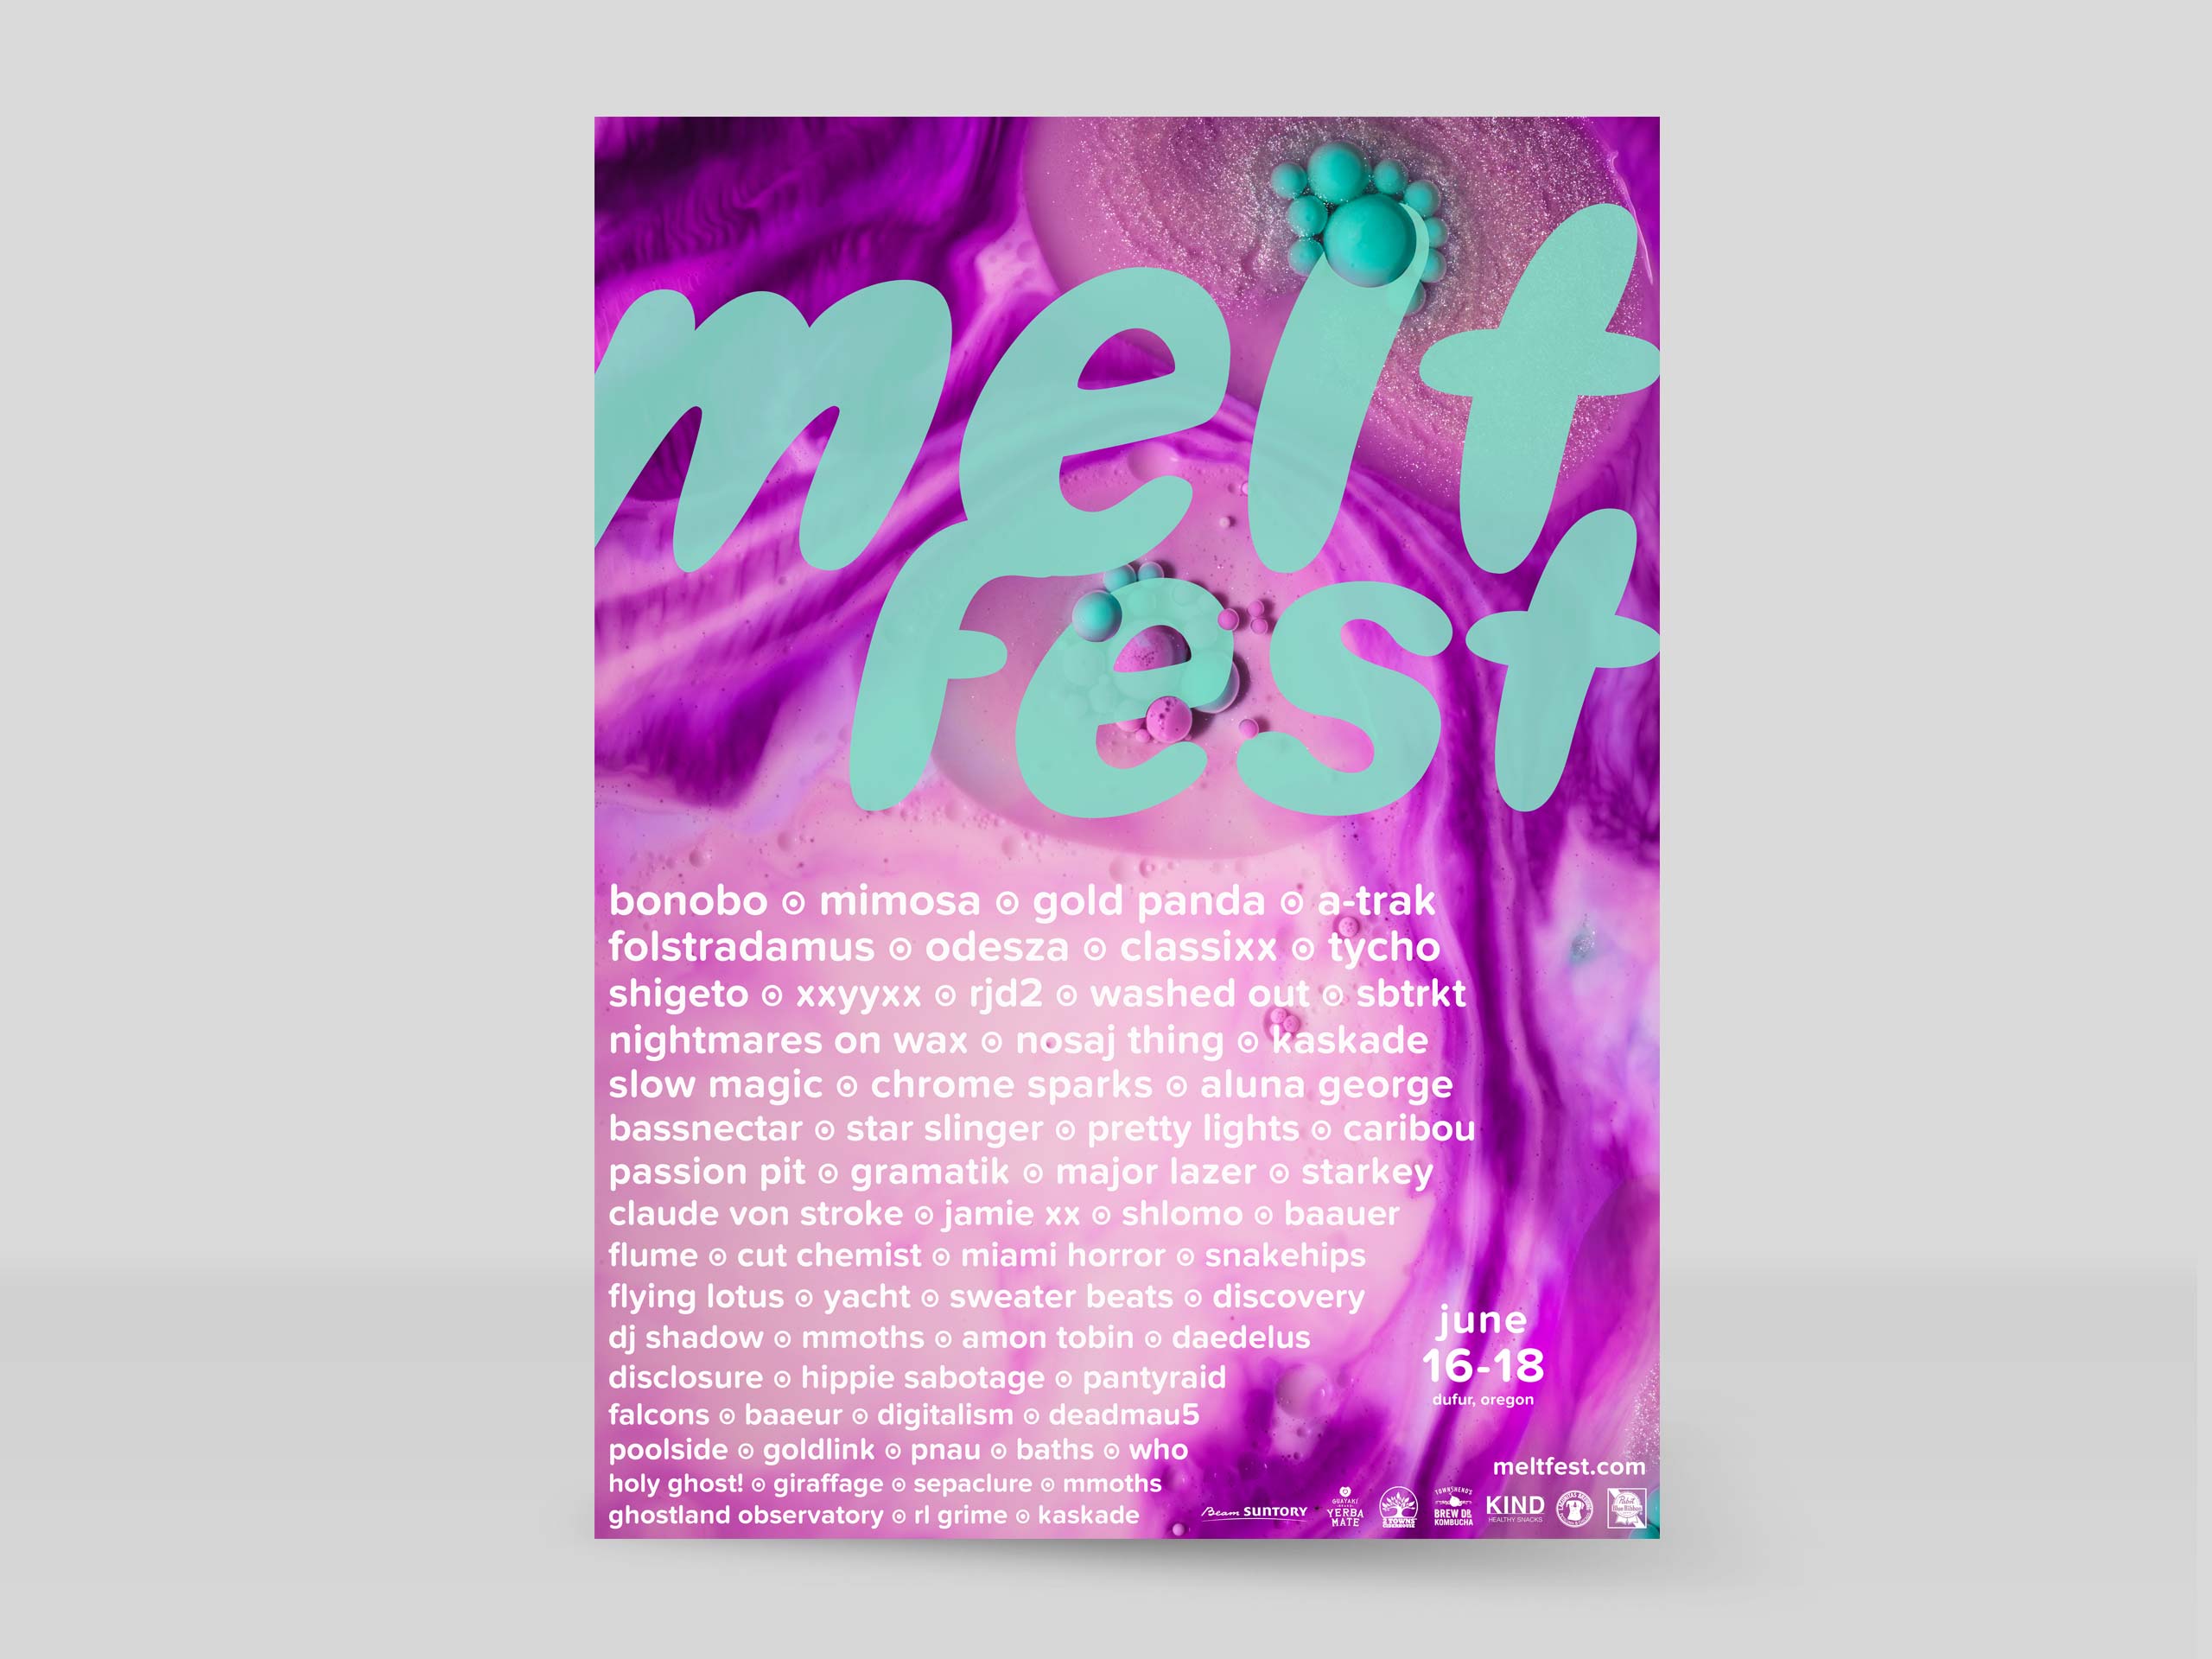 Melt Fest by Charlotte Chevalier